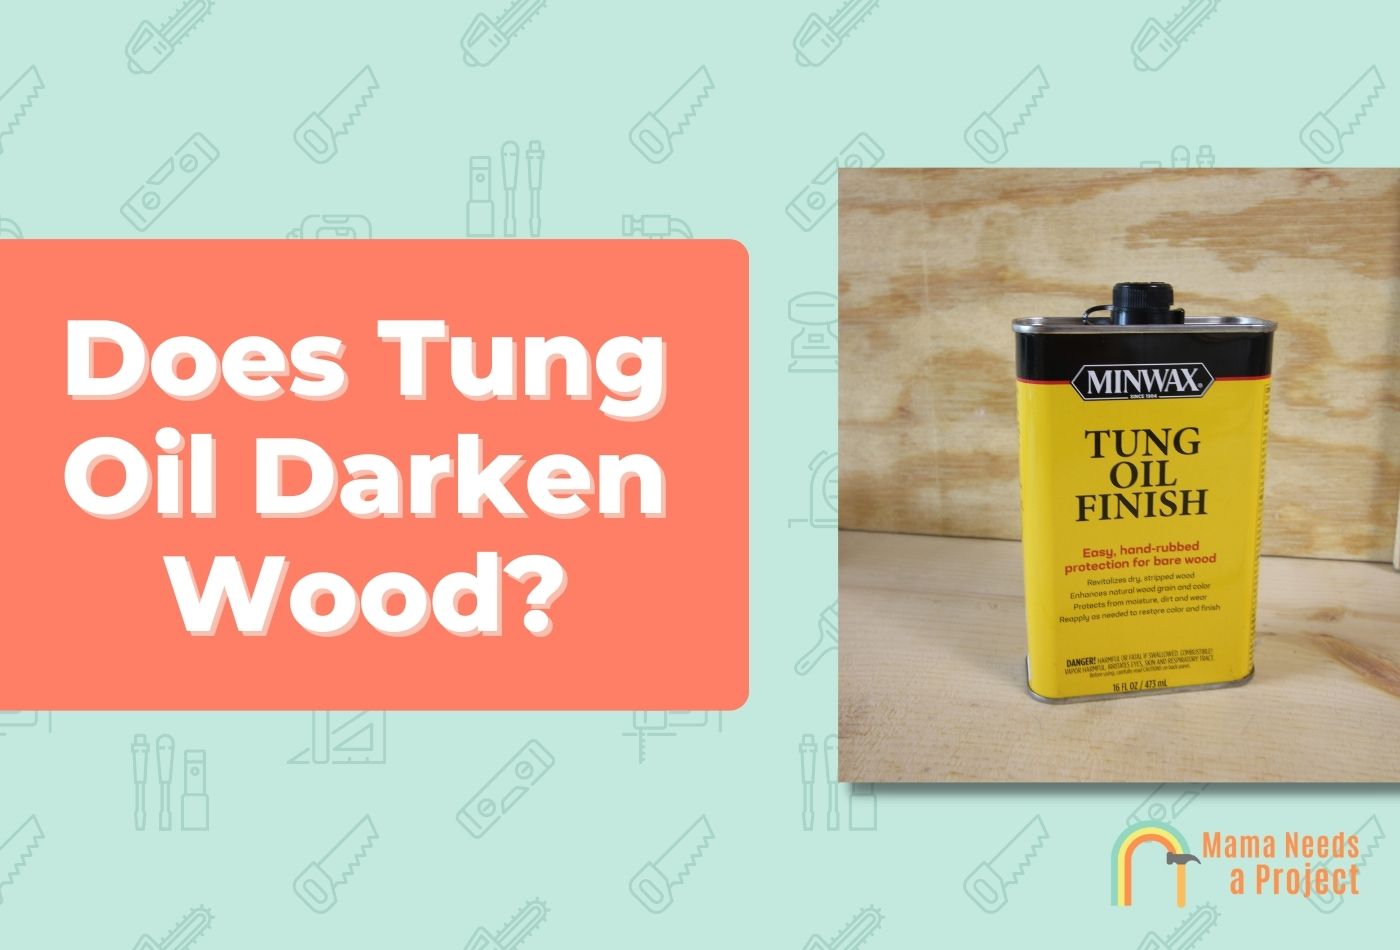 Does Tung Oil Darken Wood?